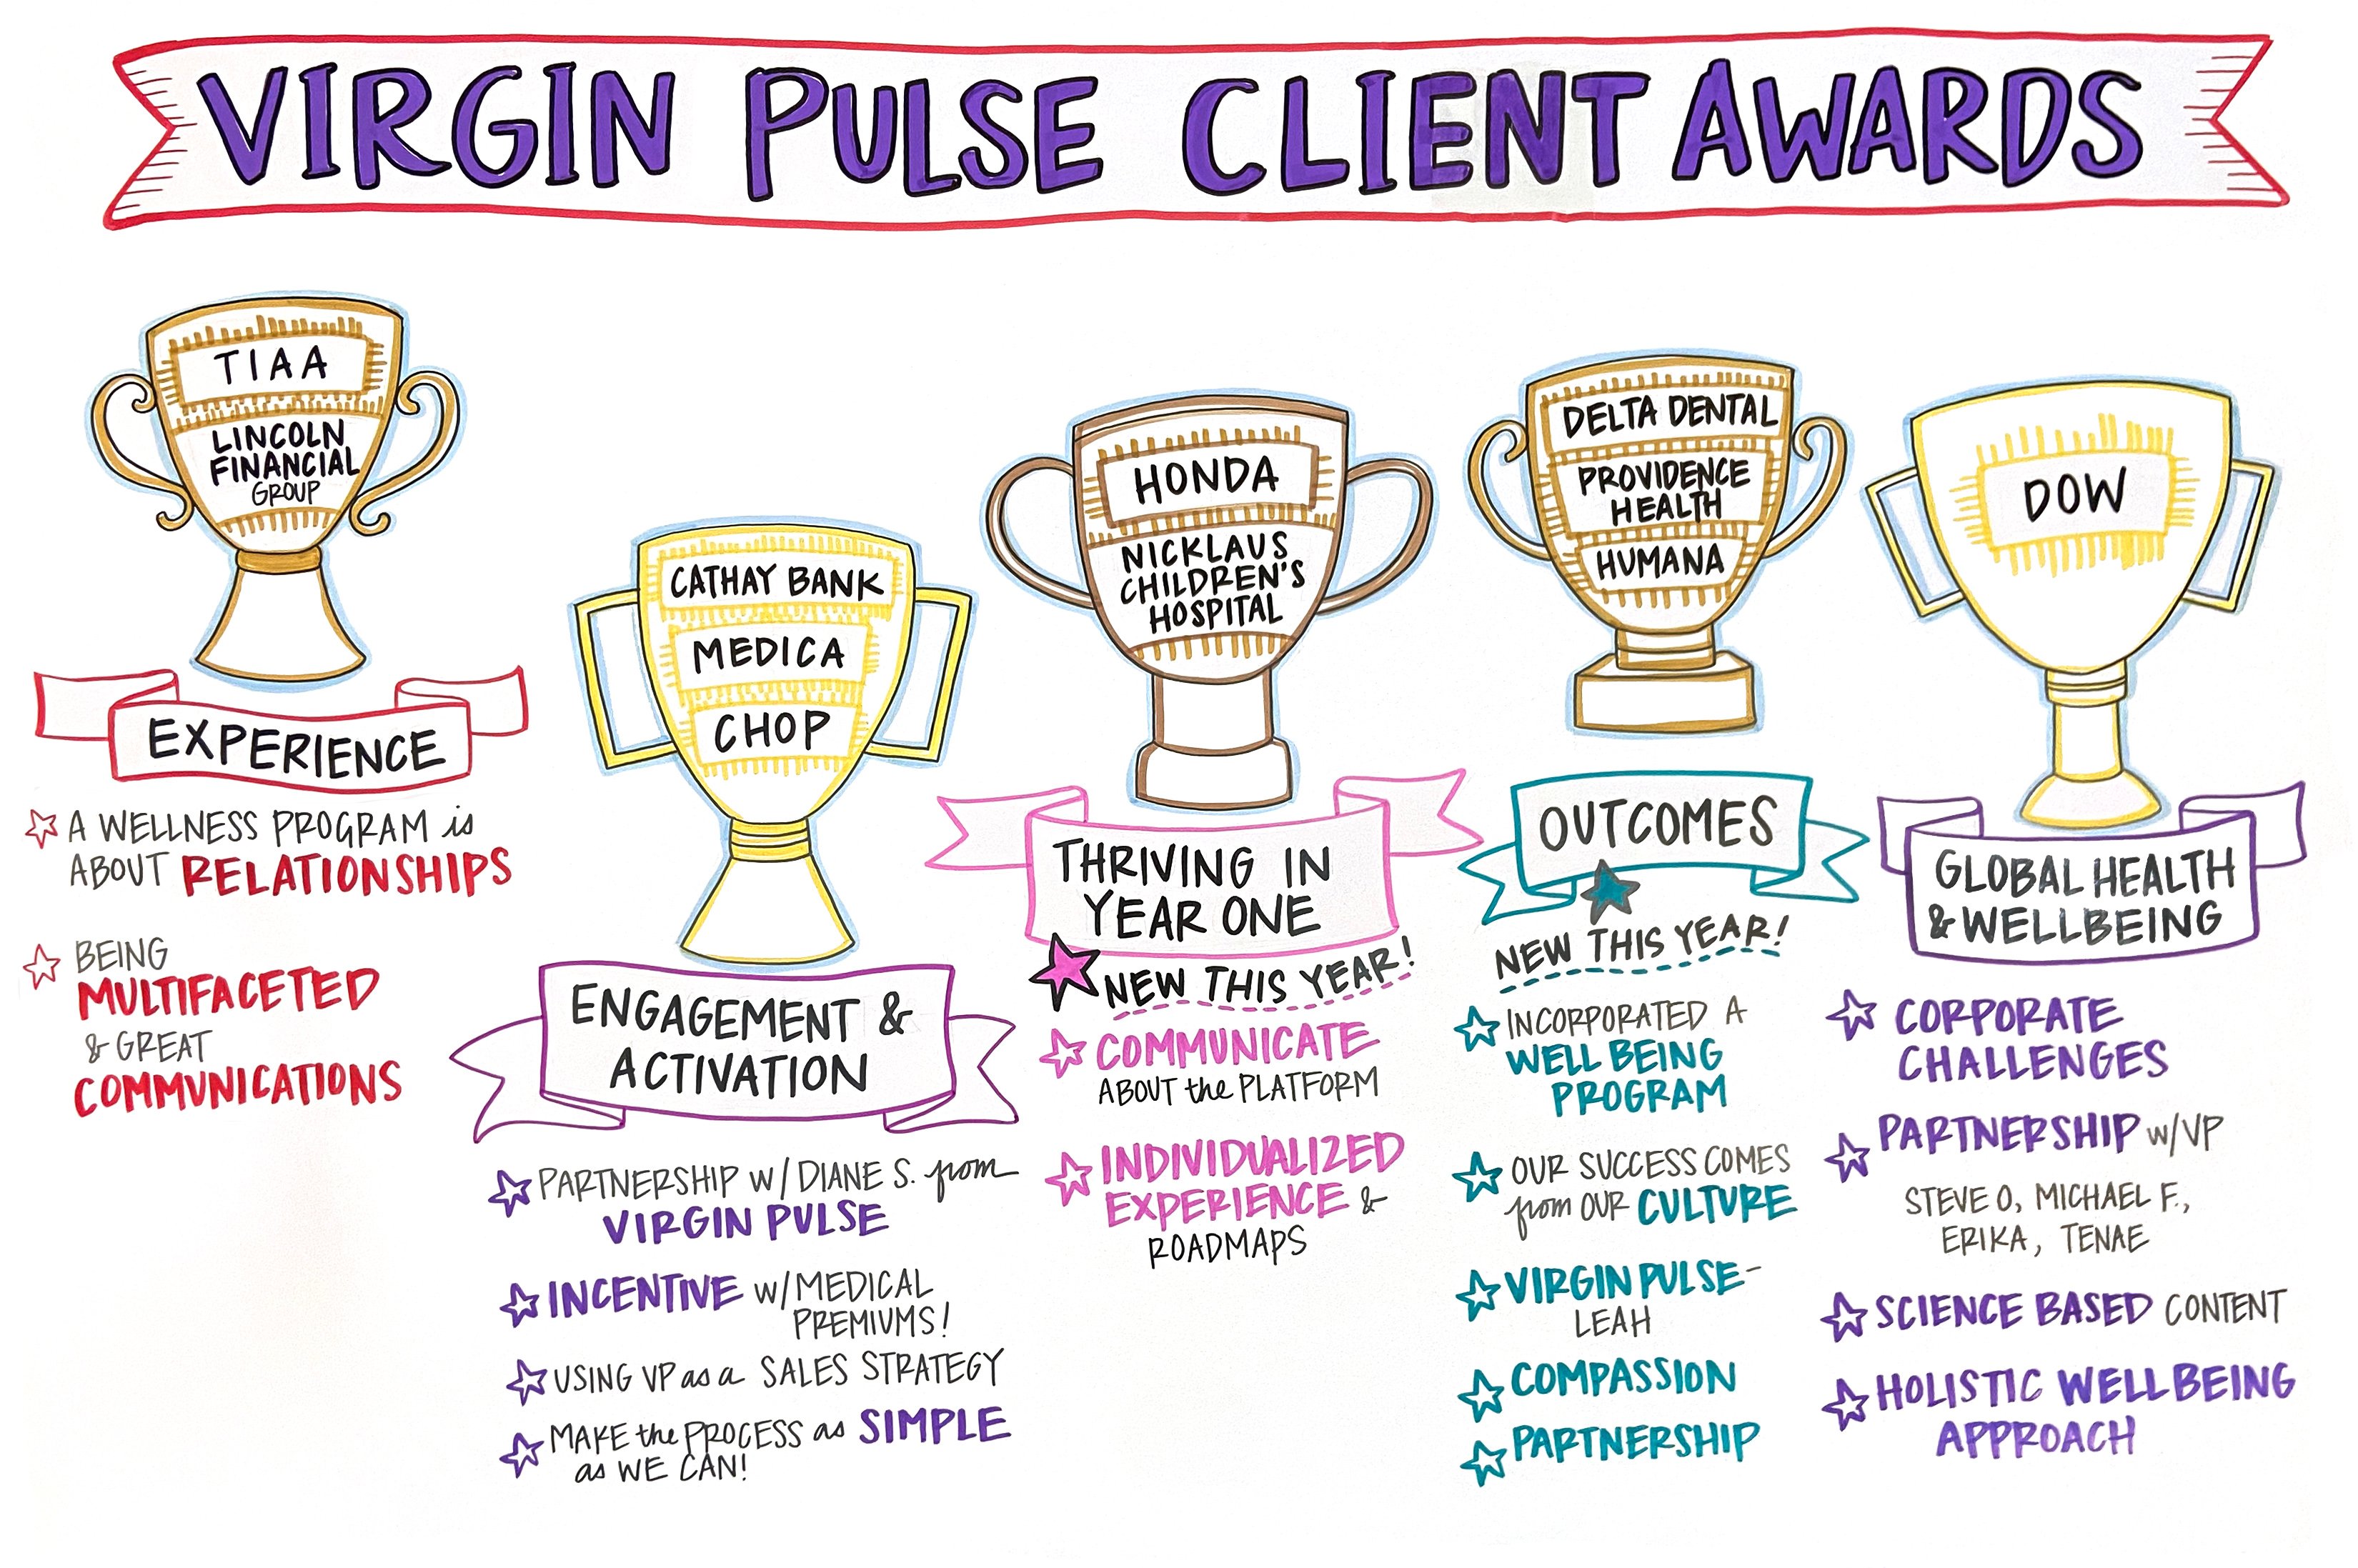 Virgin Pulse Client Awards